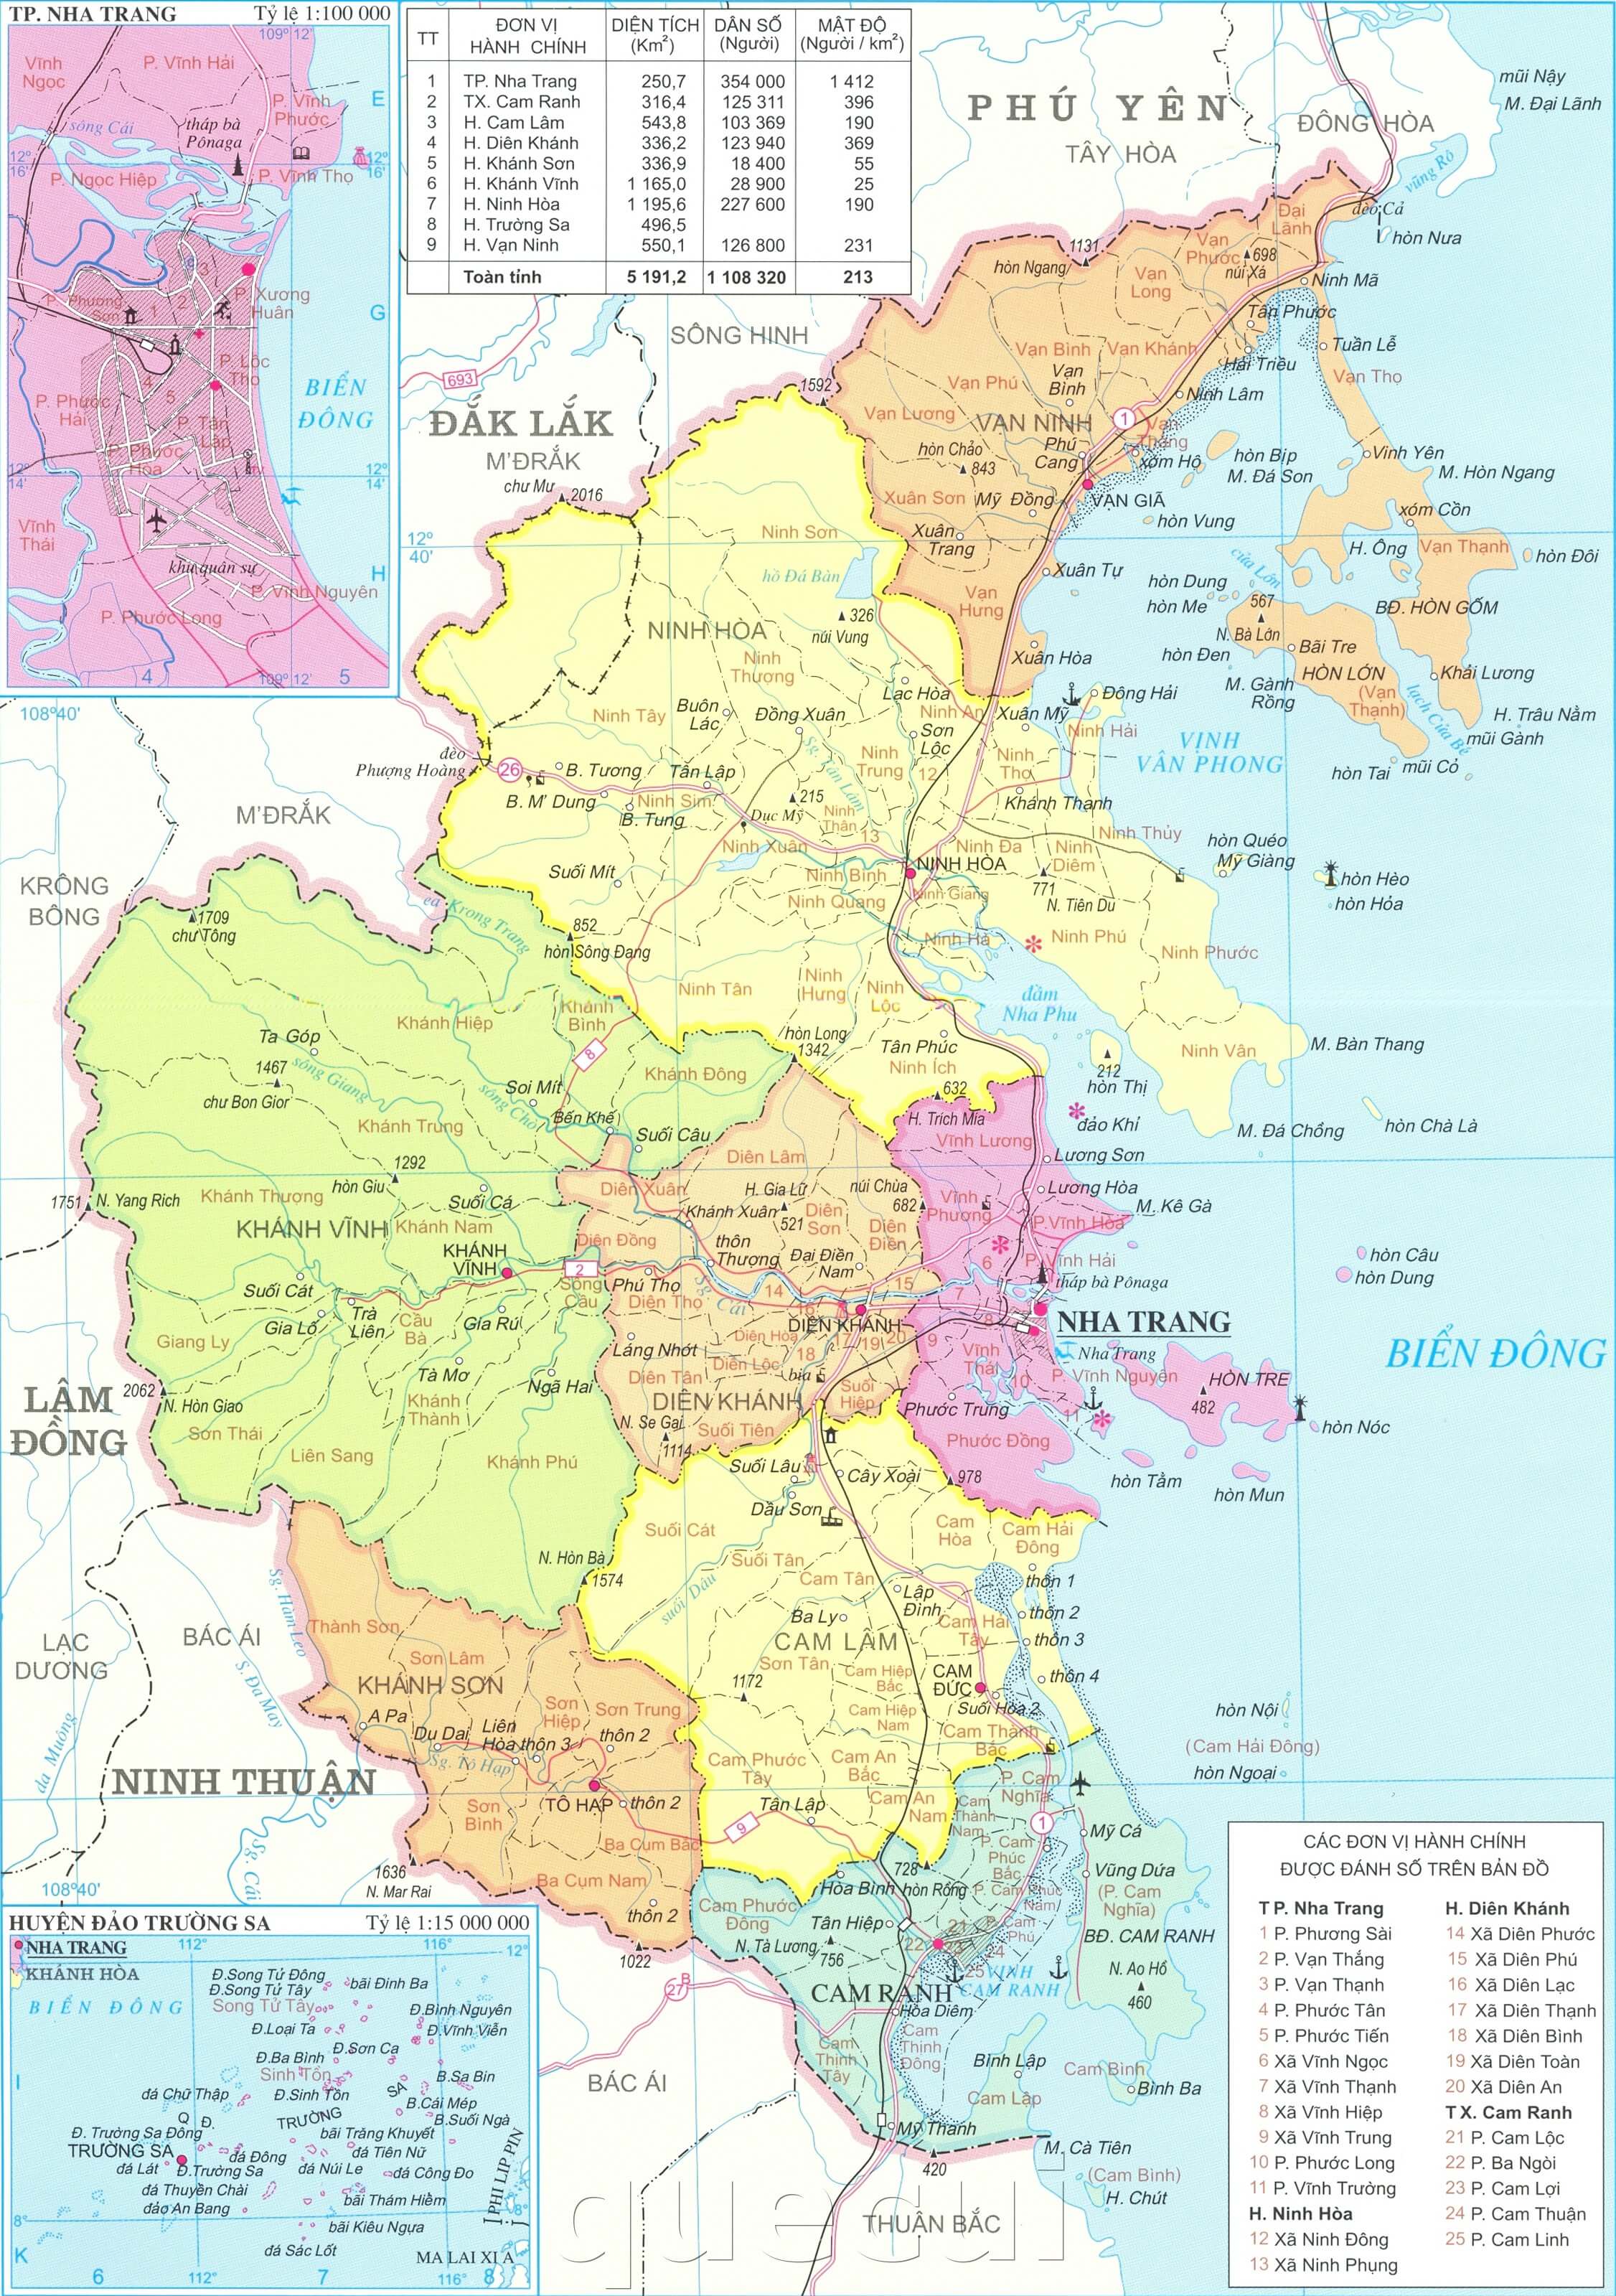 Tỉnh Khánh Hòa là nơi có nền kinh tế phát triển và các dịch vụ đa dạng. Trong năm 2024, bản đồ tỉnh Khánh Hòa chi tiết được cập nhật sẽ giúp cho các doanh nghiệp và nhà đầu tư có thể hiểu rõ hơn về sự phát triển của tỉnh này, cũng như đưa ra quyết định đúng đắn về đầu tư.